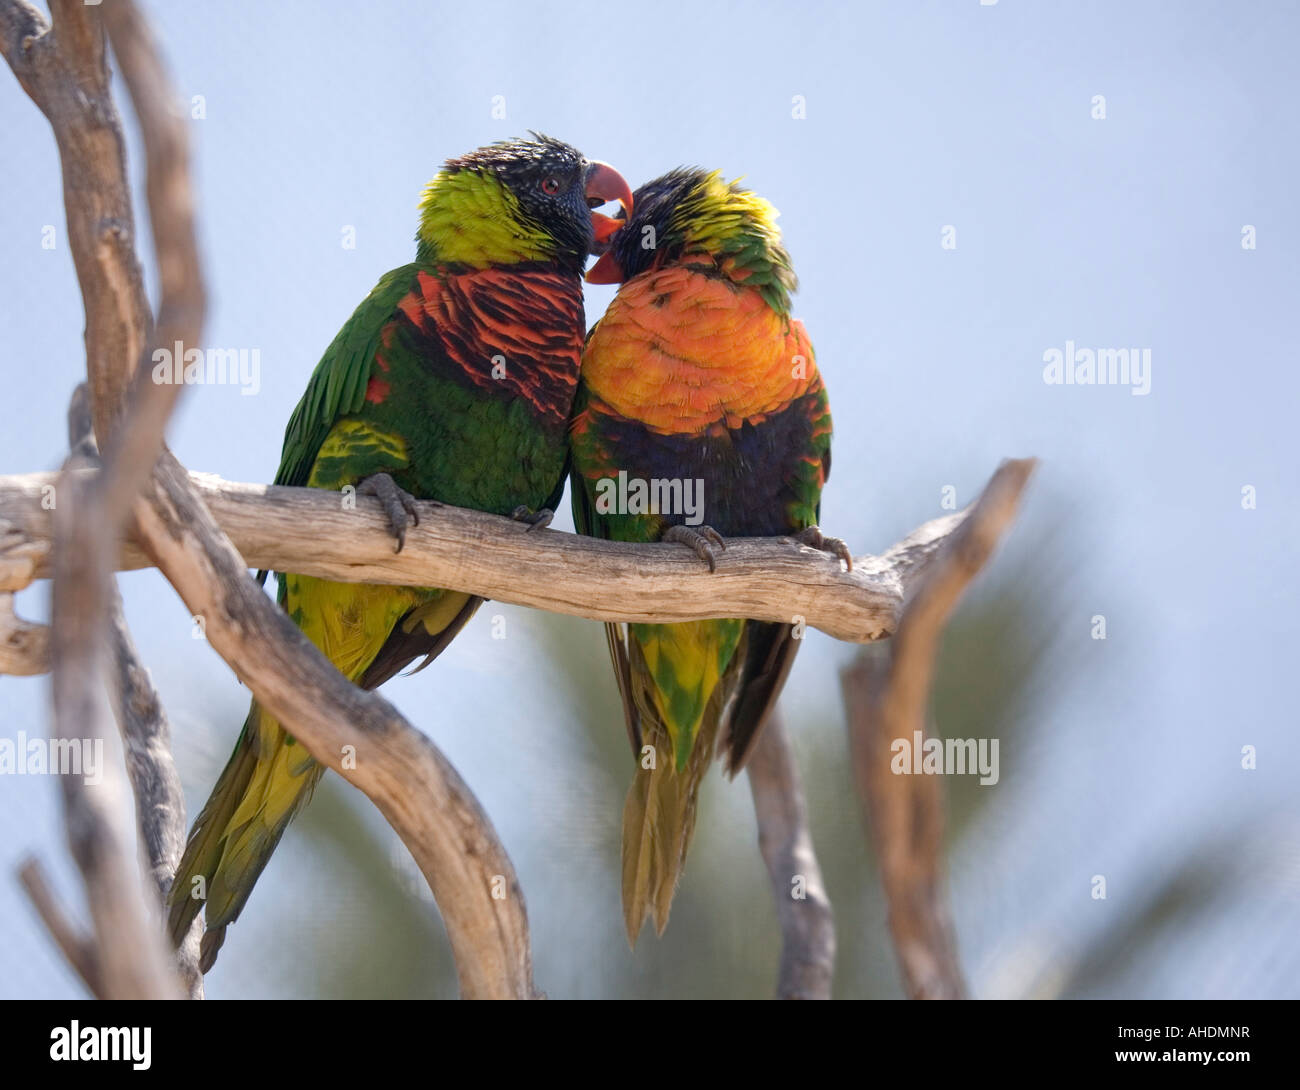 Due Rainbow parrocchetti sedersi insieme su un ramo in una soleggiata voliera, nuzzling ogni altro. Foto Stock